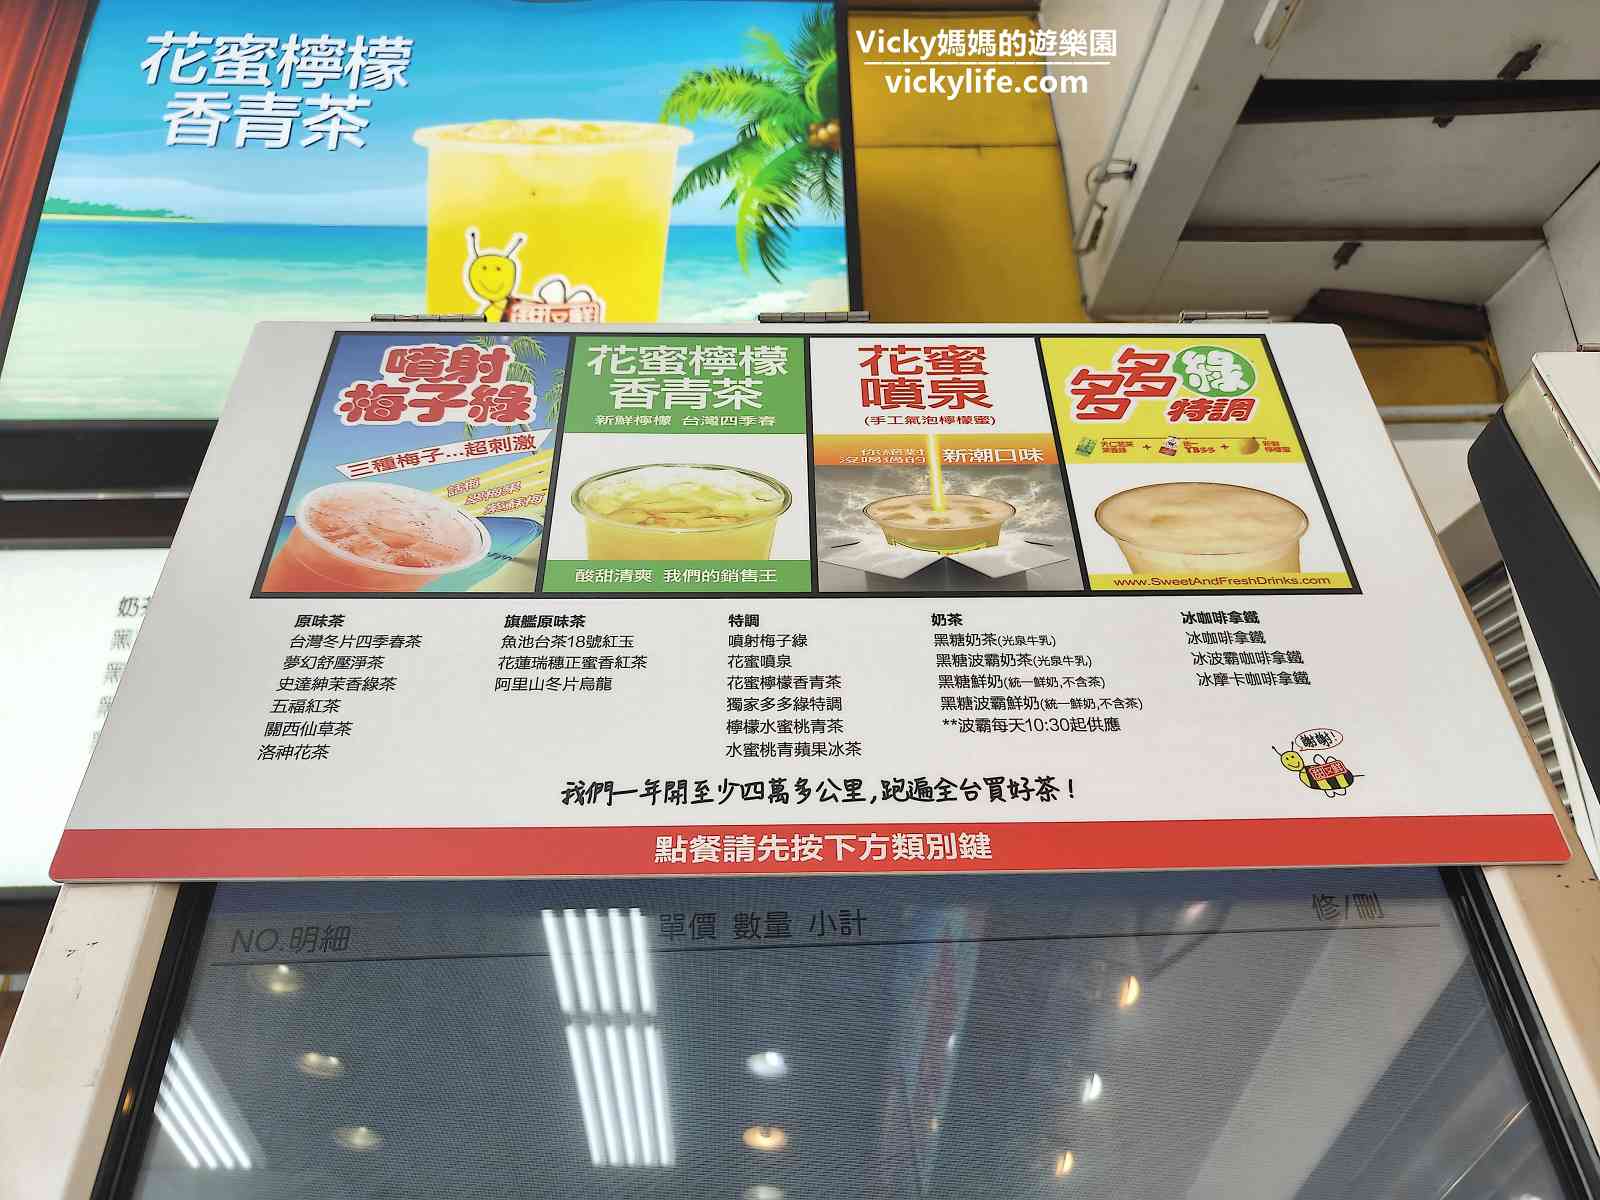 網站近期文章：台南飲料︱甜又鮮飲料 府前店：想喝什麼飲料跟飲料機討論就對了，還可以線上點飲料喔！附飲料單和售價